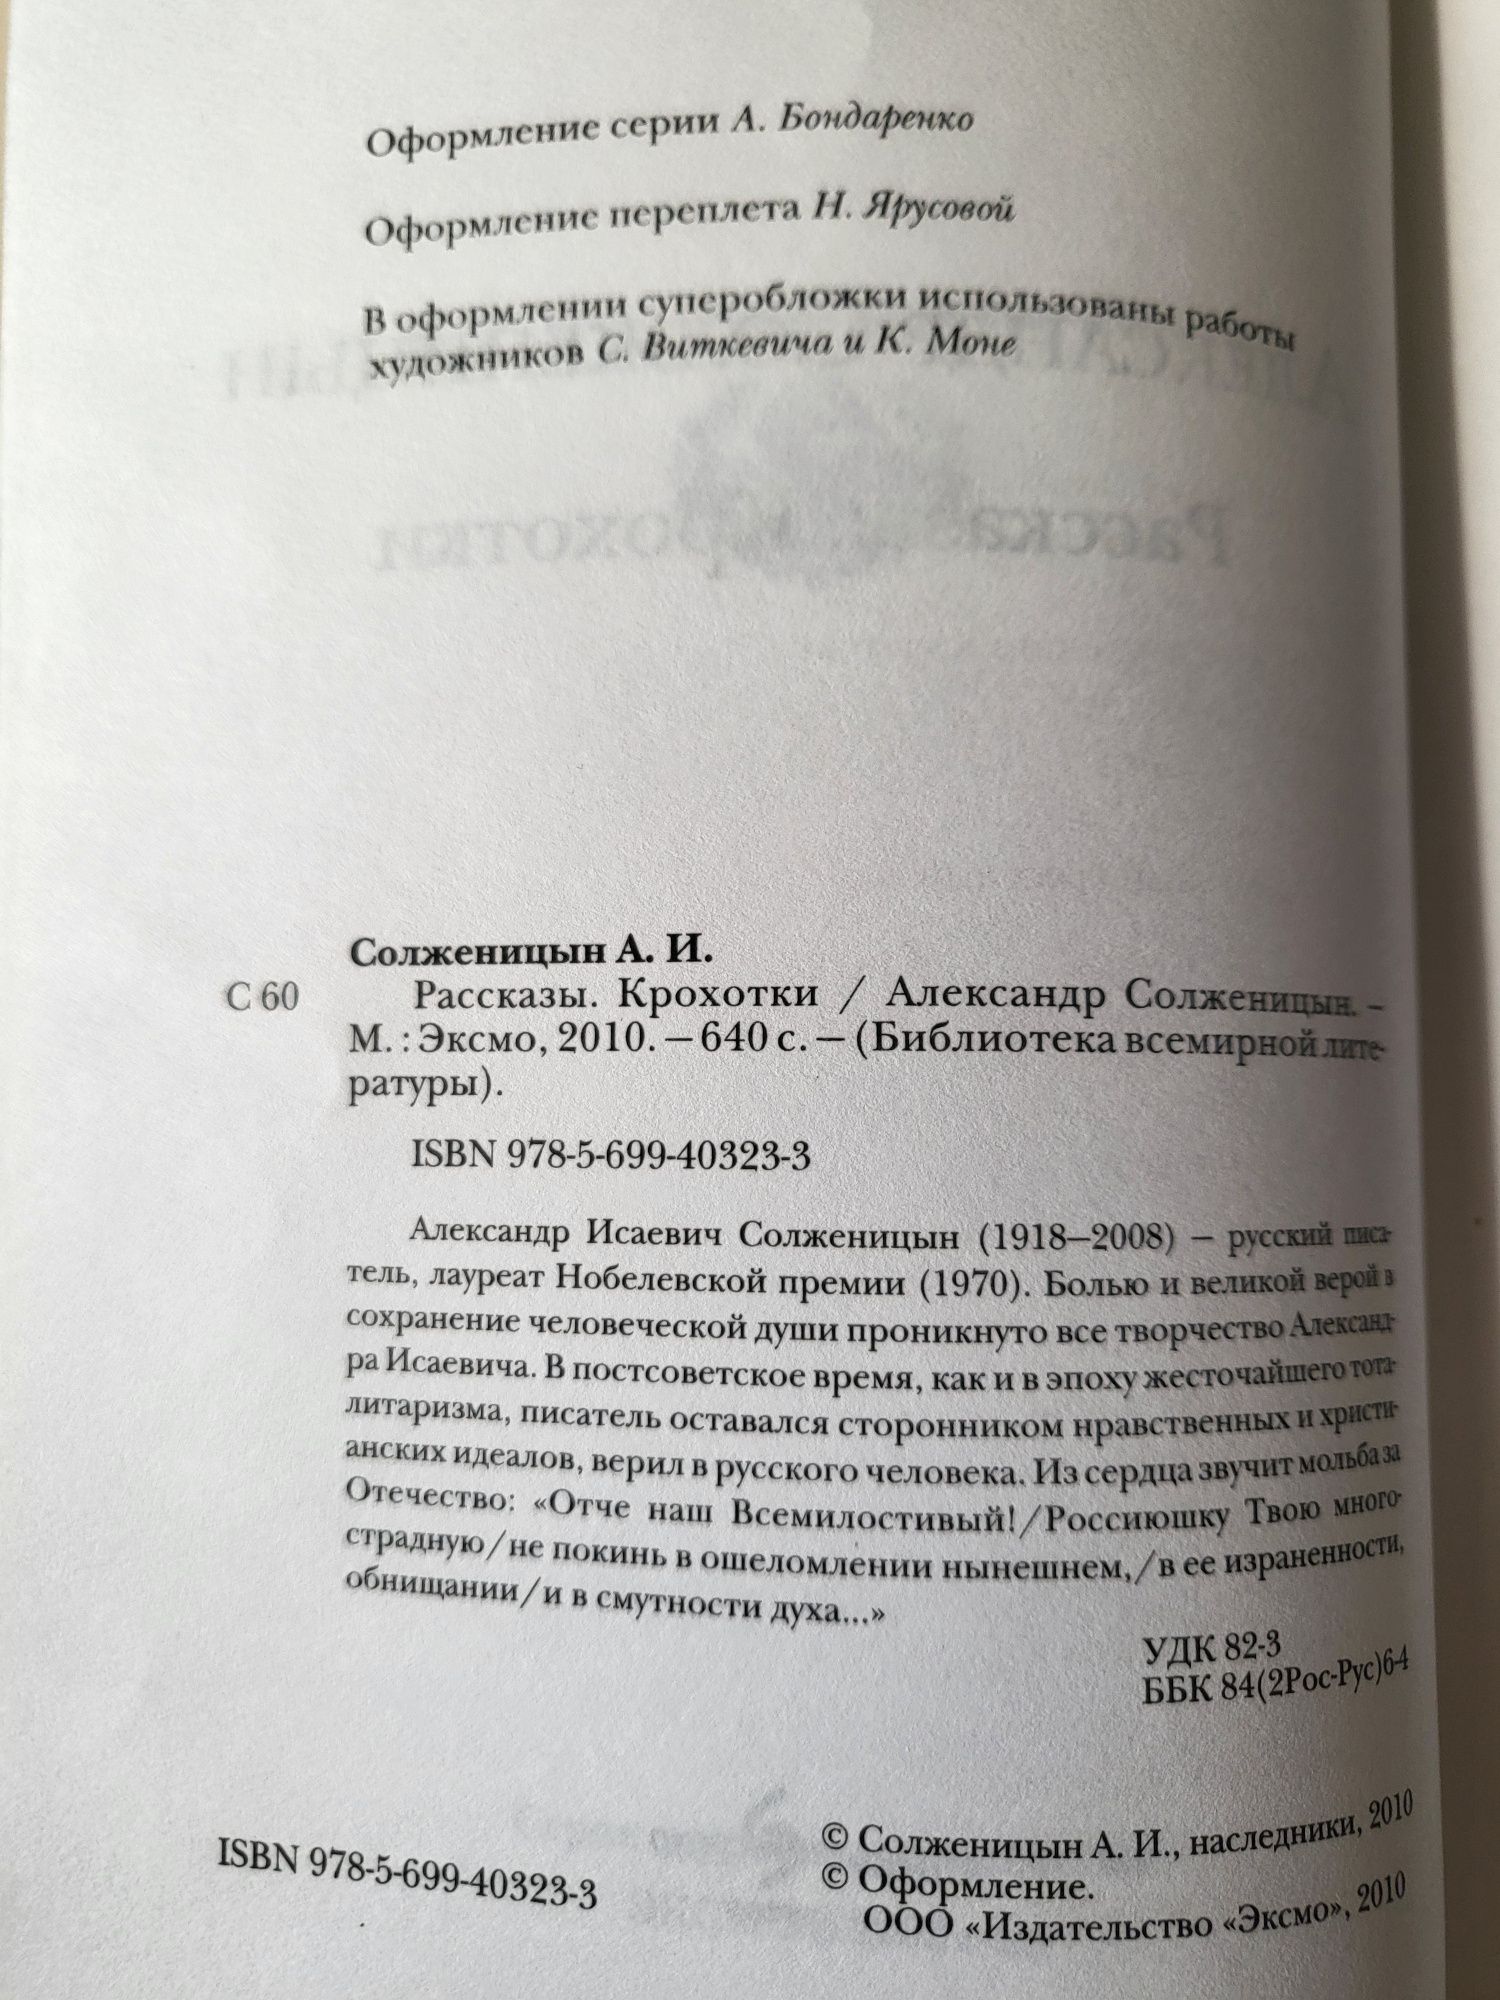 Александр Солженицын. Рассказы, крохотки